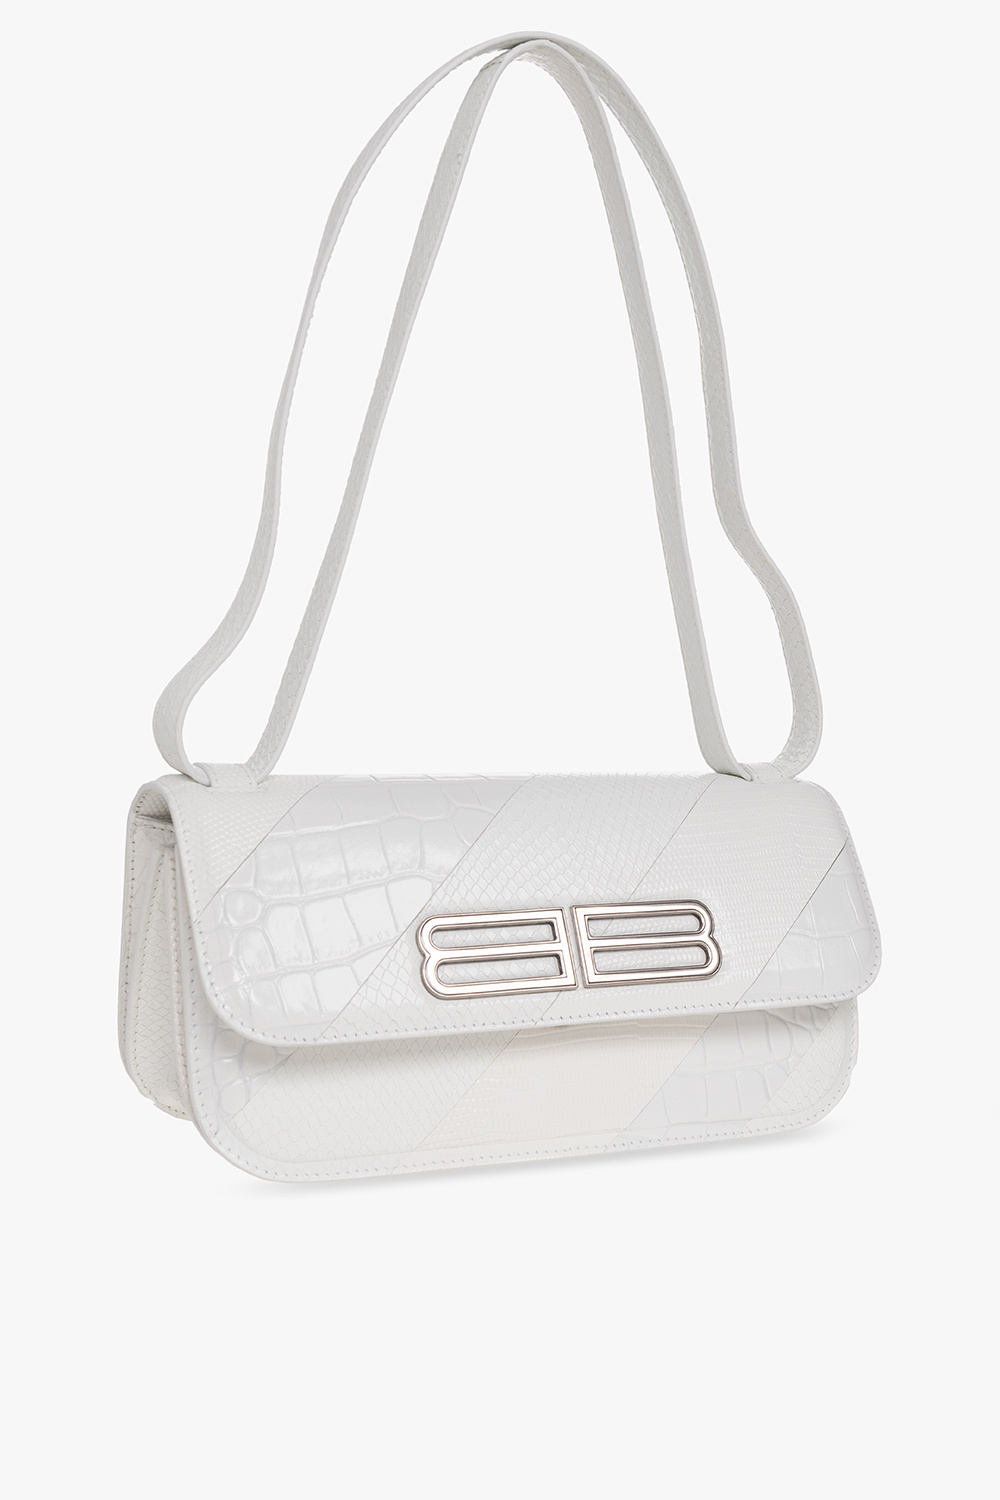 Balenciaga ‘Gossip Small’ shoulder bag